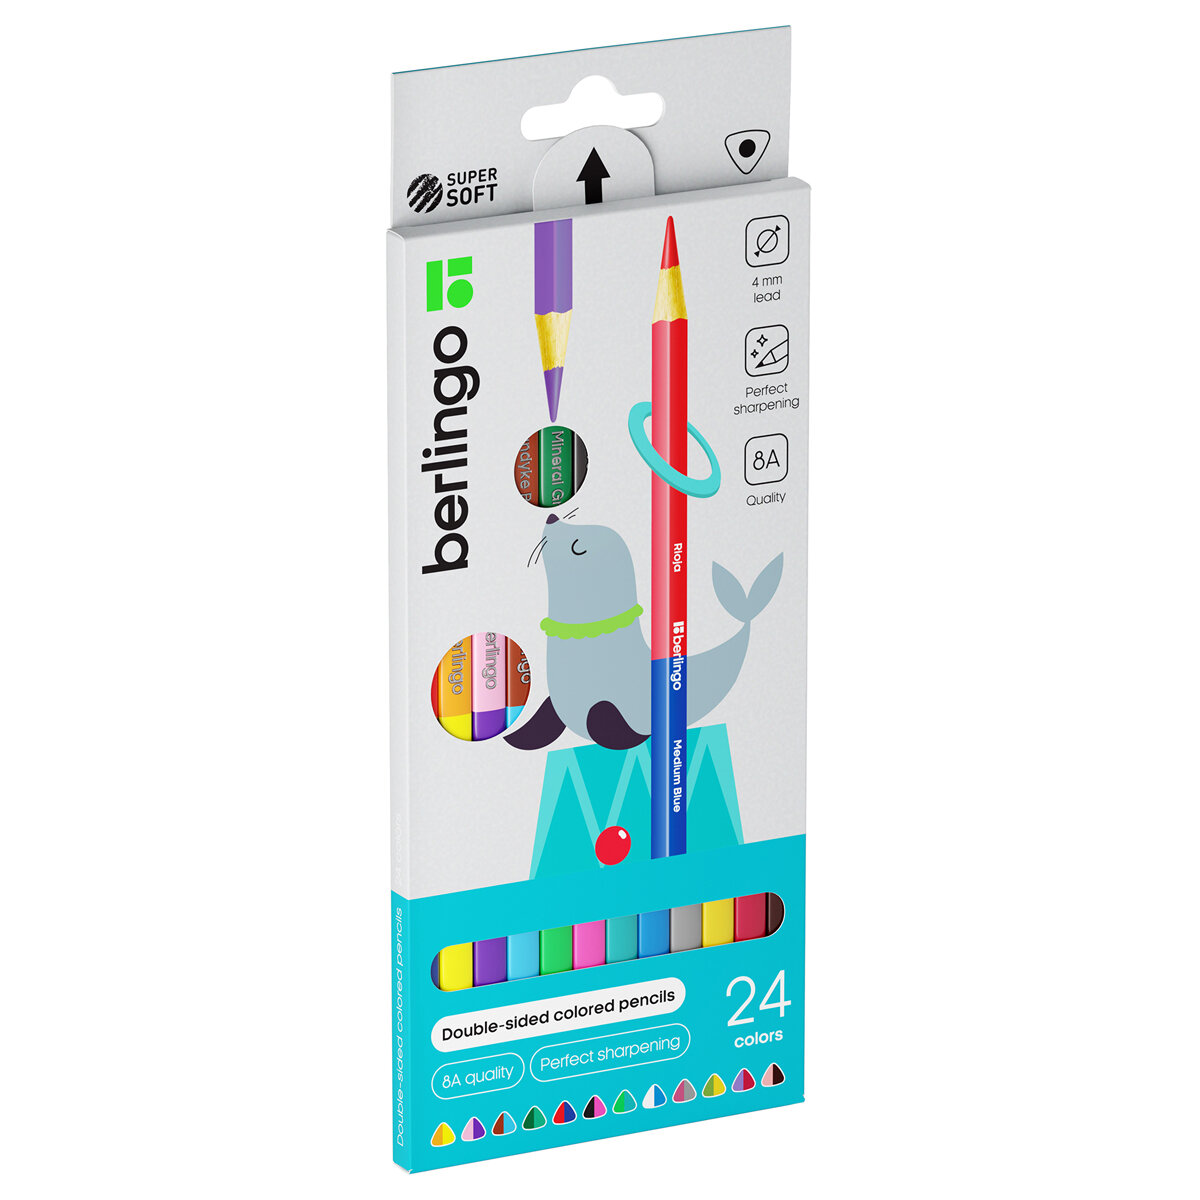 Цветные карандаши для школы 24 цвета, двусторонние трехгранные / Набор цветных карандашей для рисования школьный Berlingo "SuperSoft. Duo"